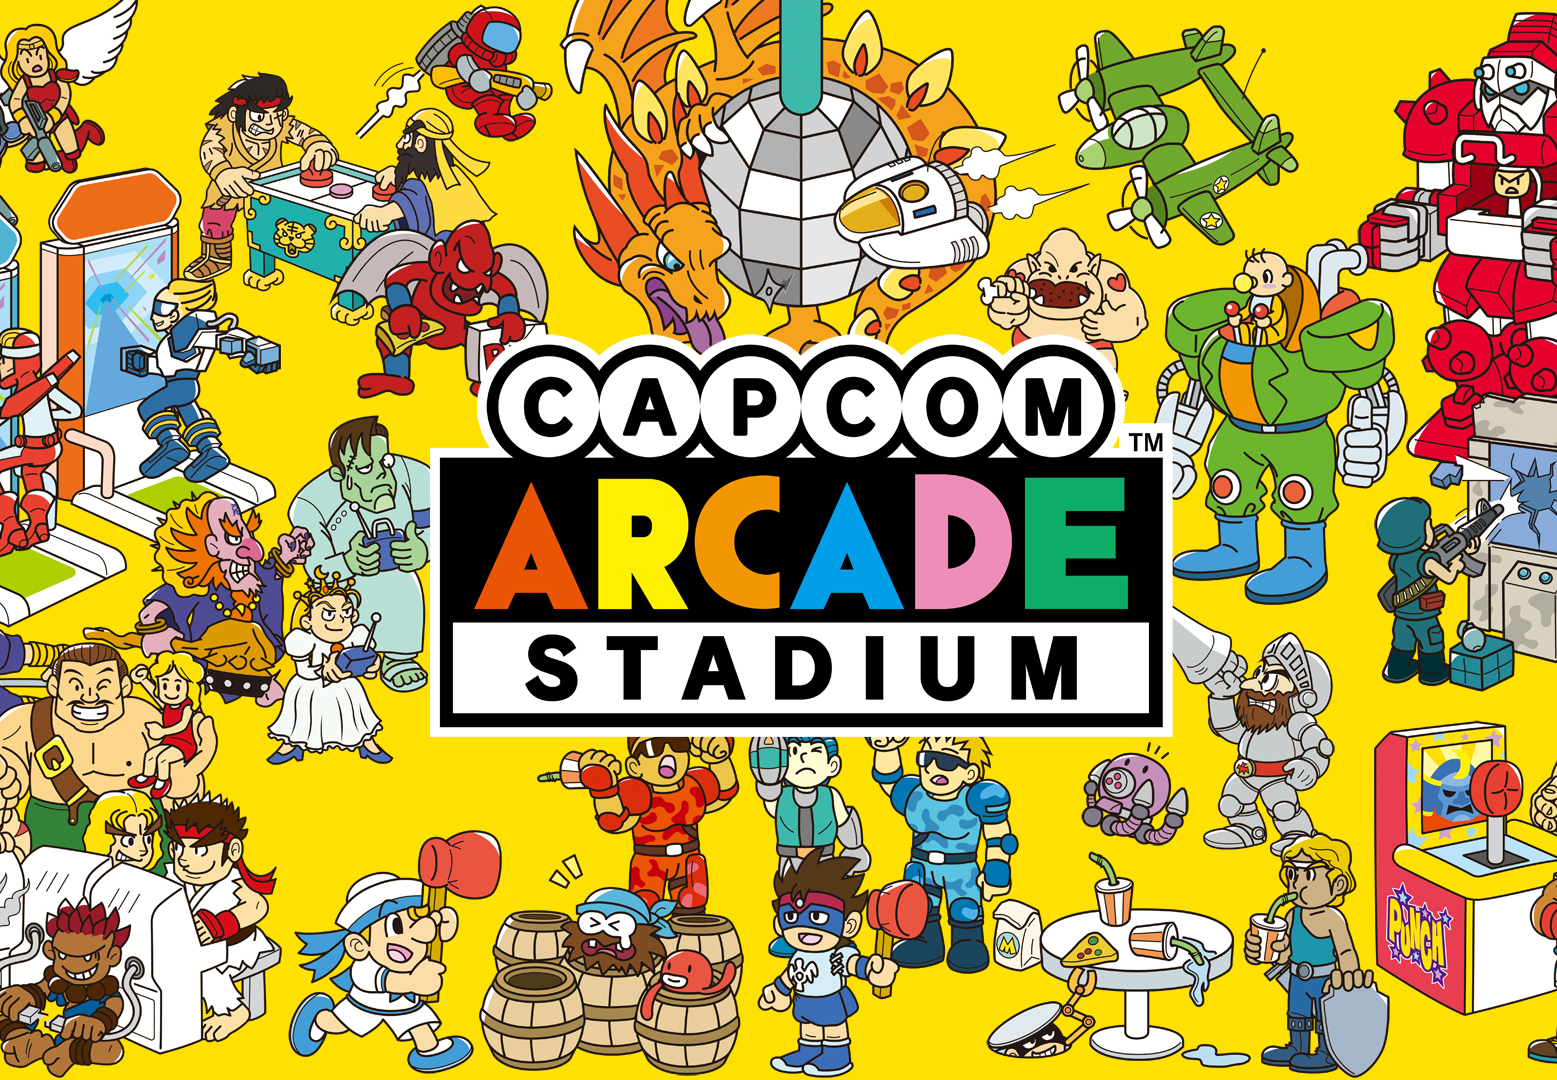 Arcade stadium. Capcom Arcade Stadium. Capcom Arcade Stadium Nintendo Switch. Значок Capcom Arcade Stadium. All games.